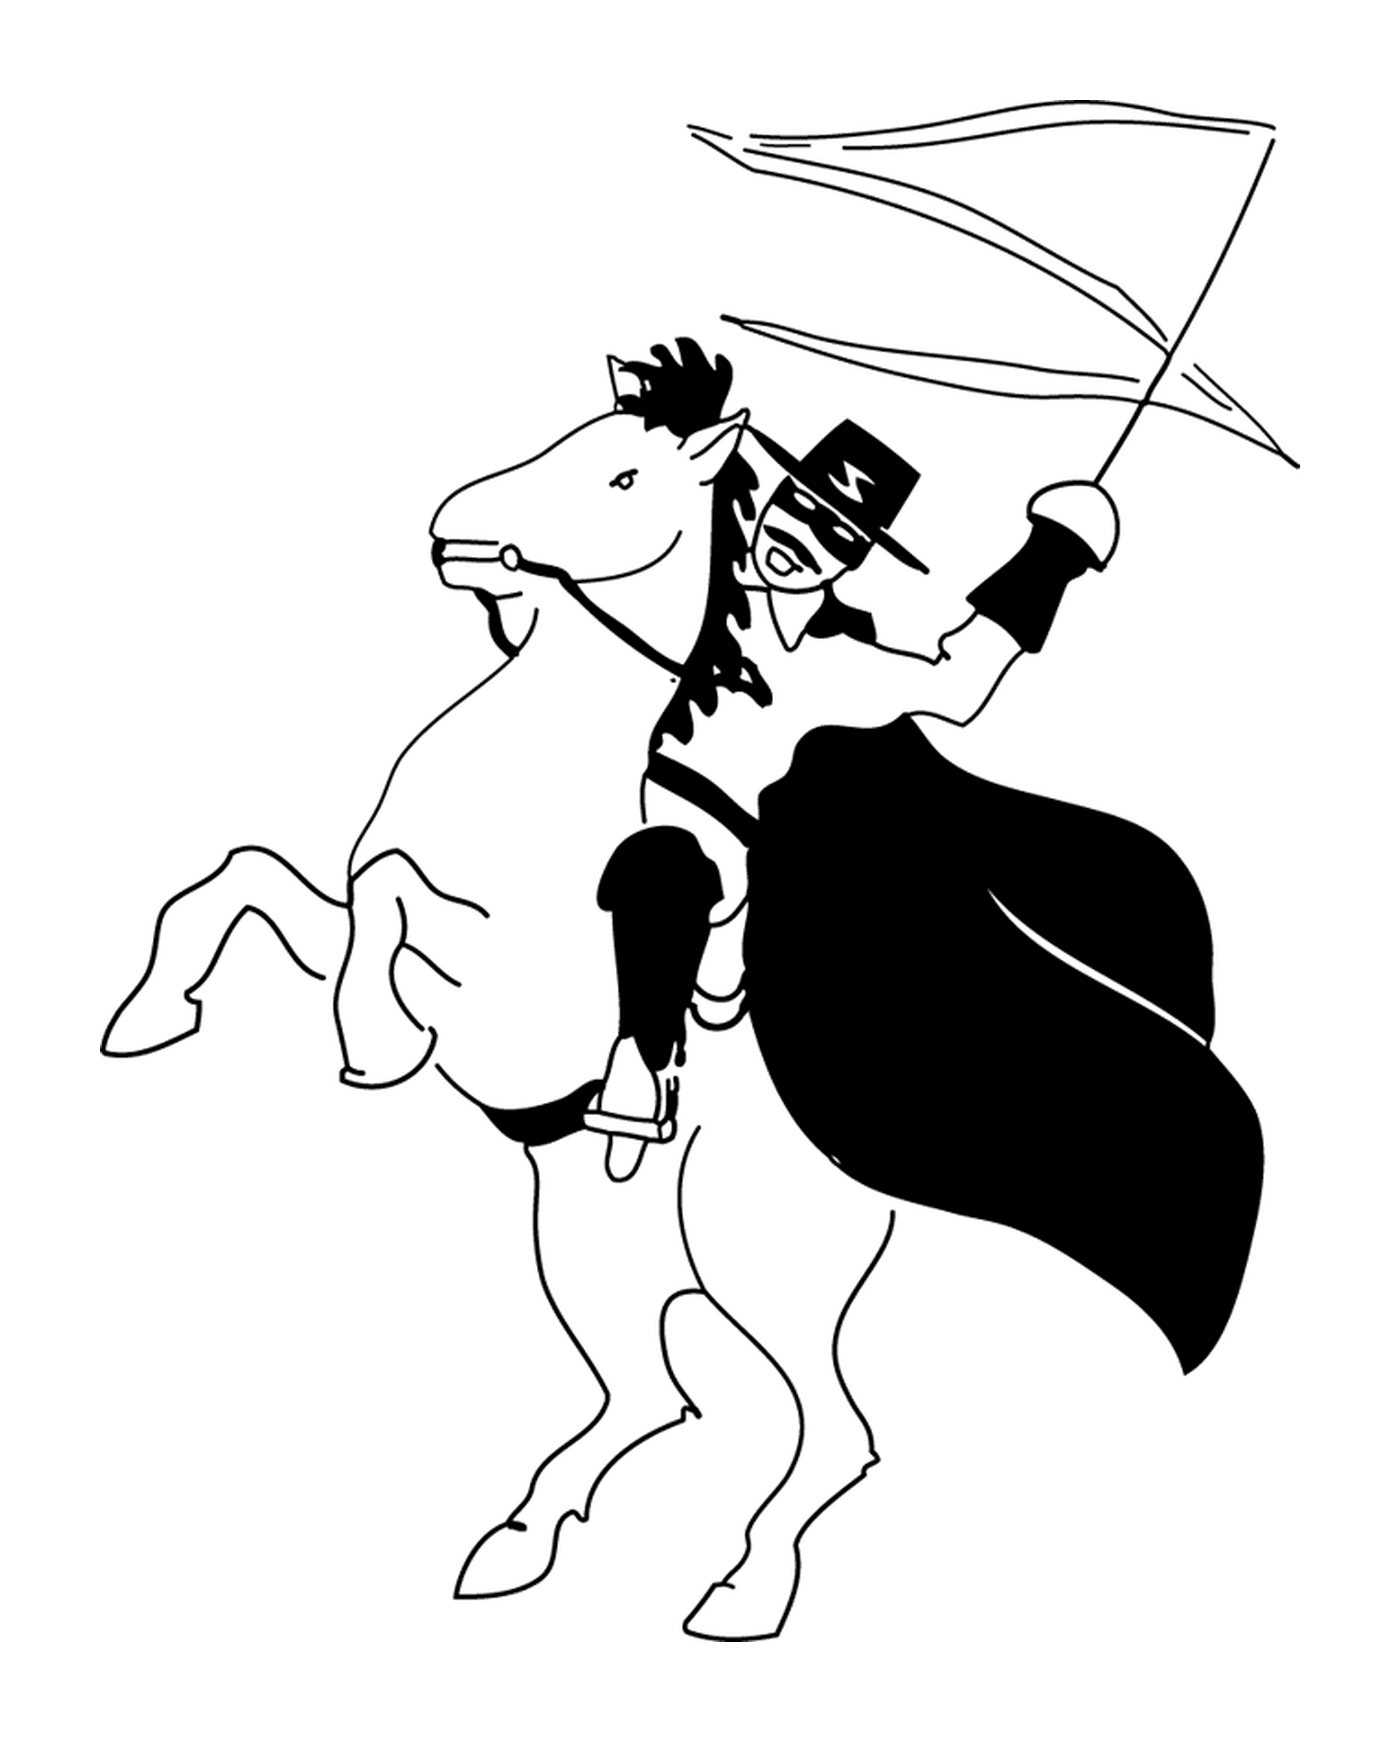  Zorro sul suo cavallo Tornado 